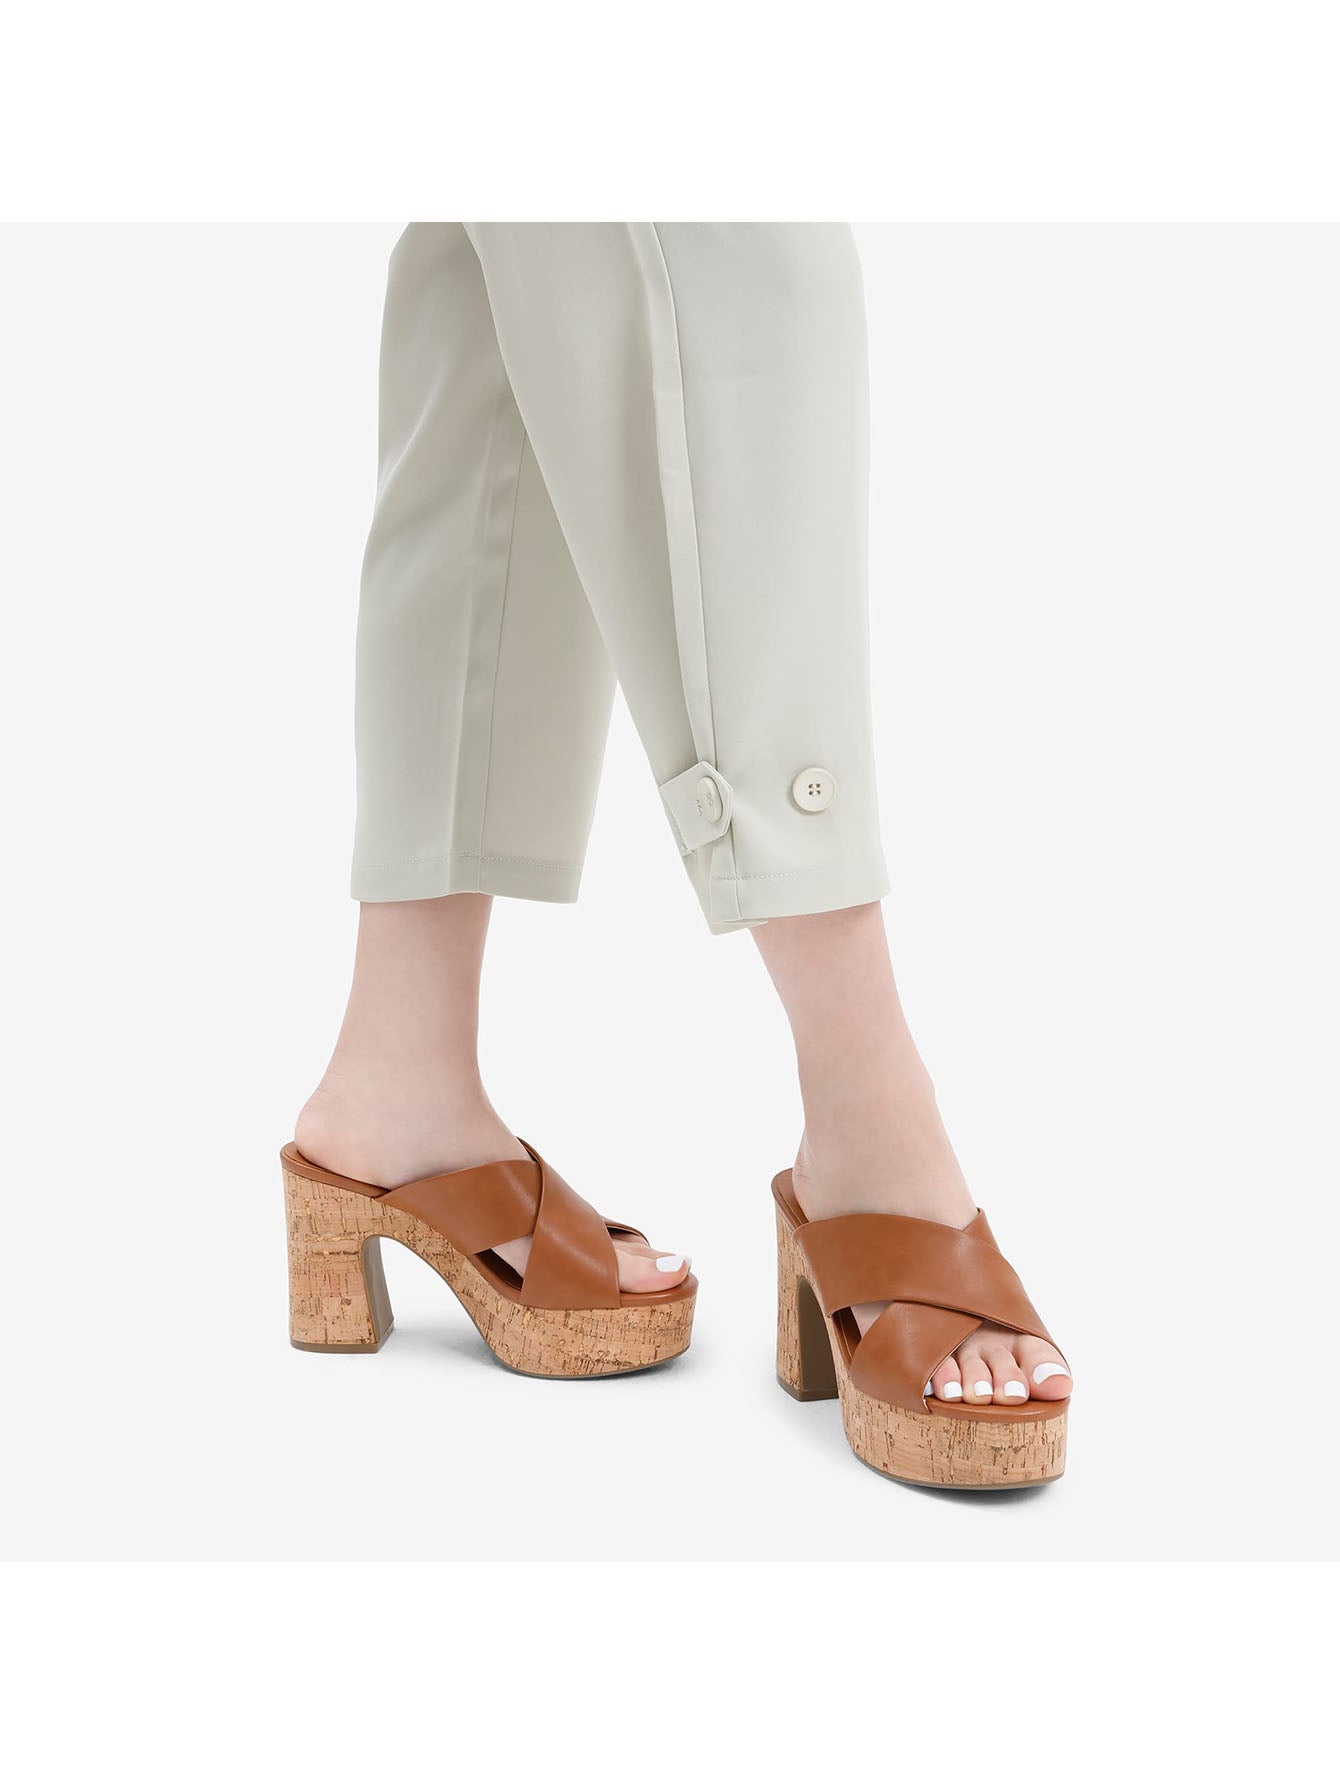 Women's Platform Wedge Sandals: Chic Open Toe Slip-On Heels